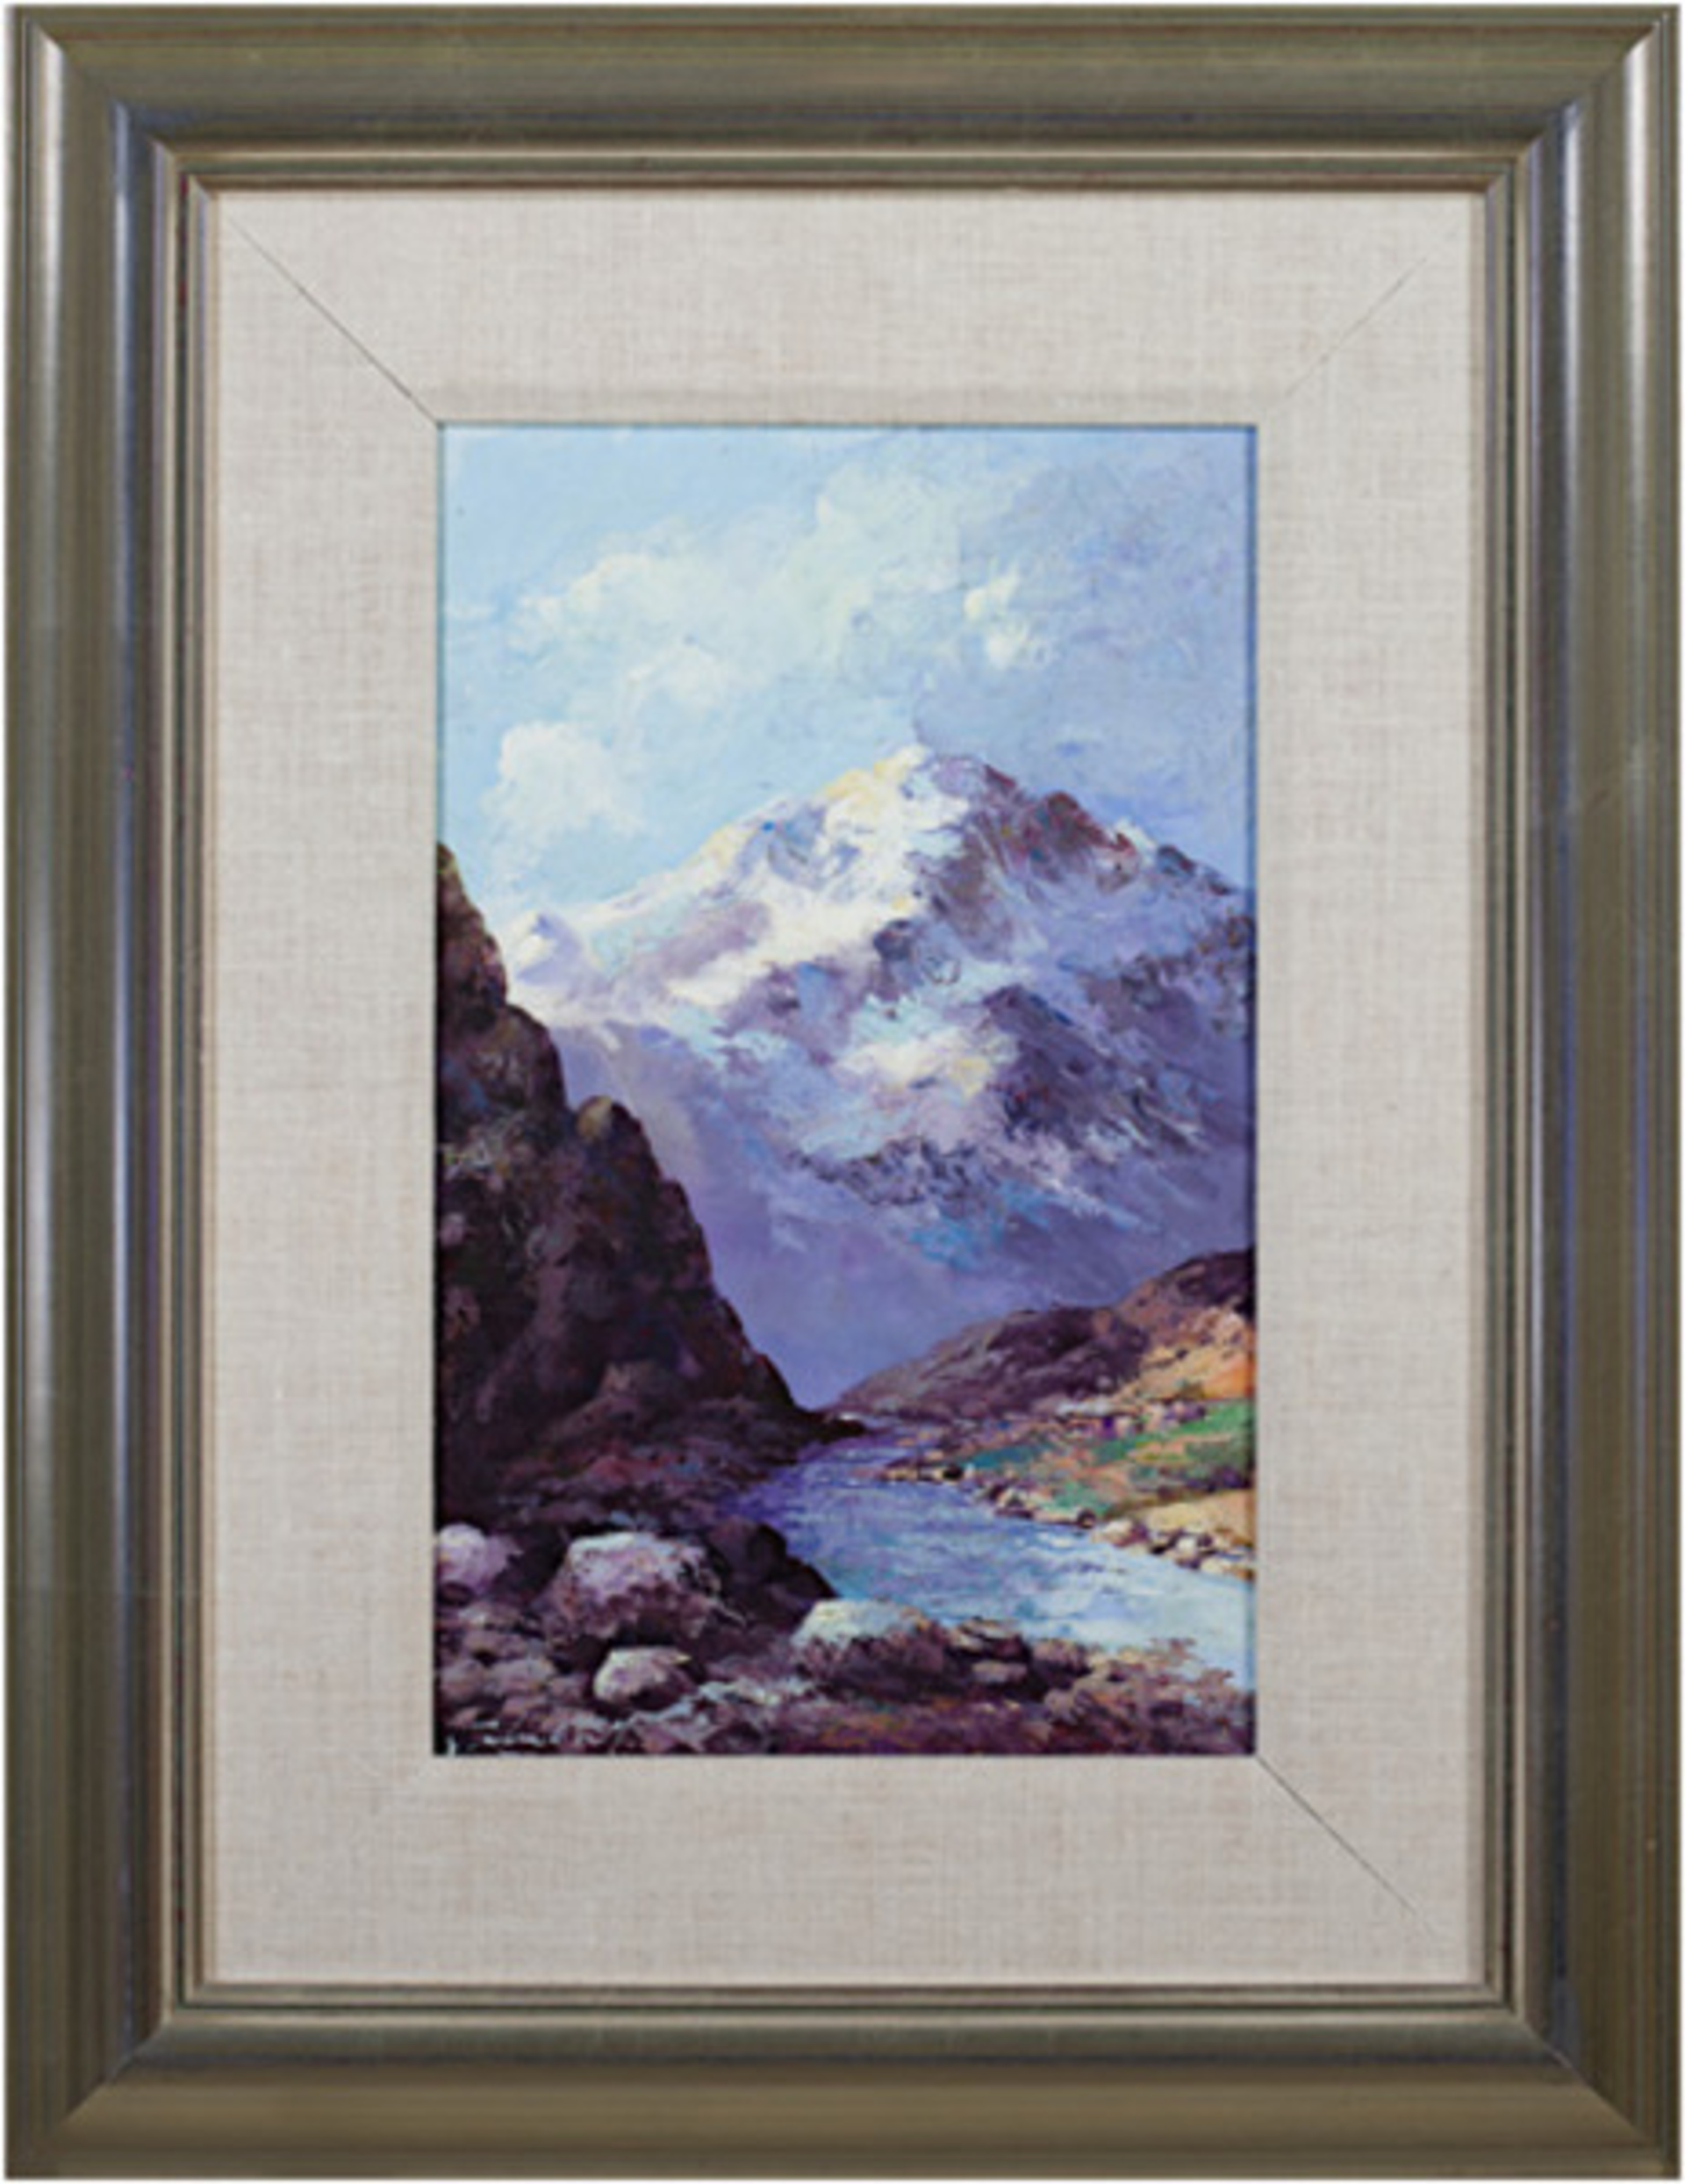 Cordillera, Blanca-Ancash (White Mountains) by Abelardo Marquez